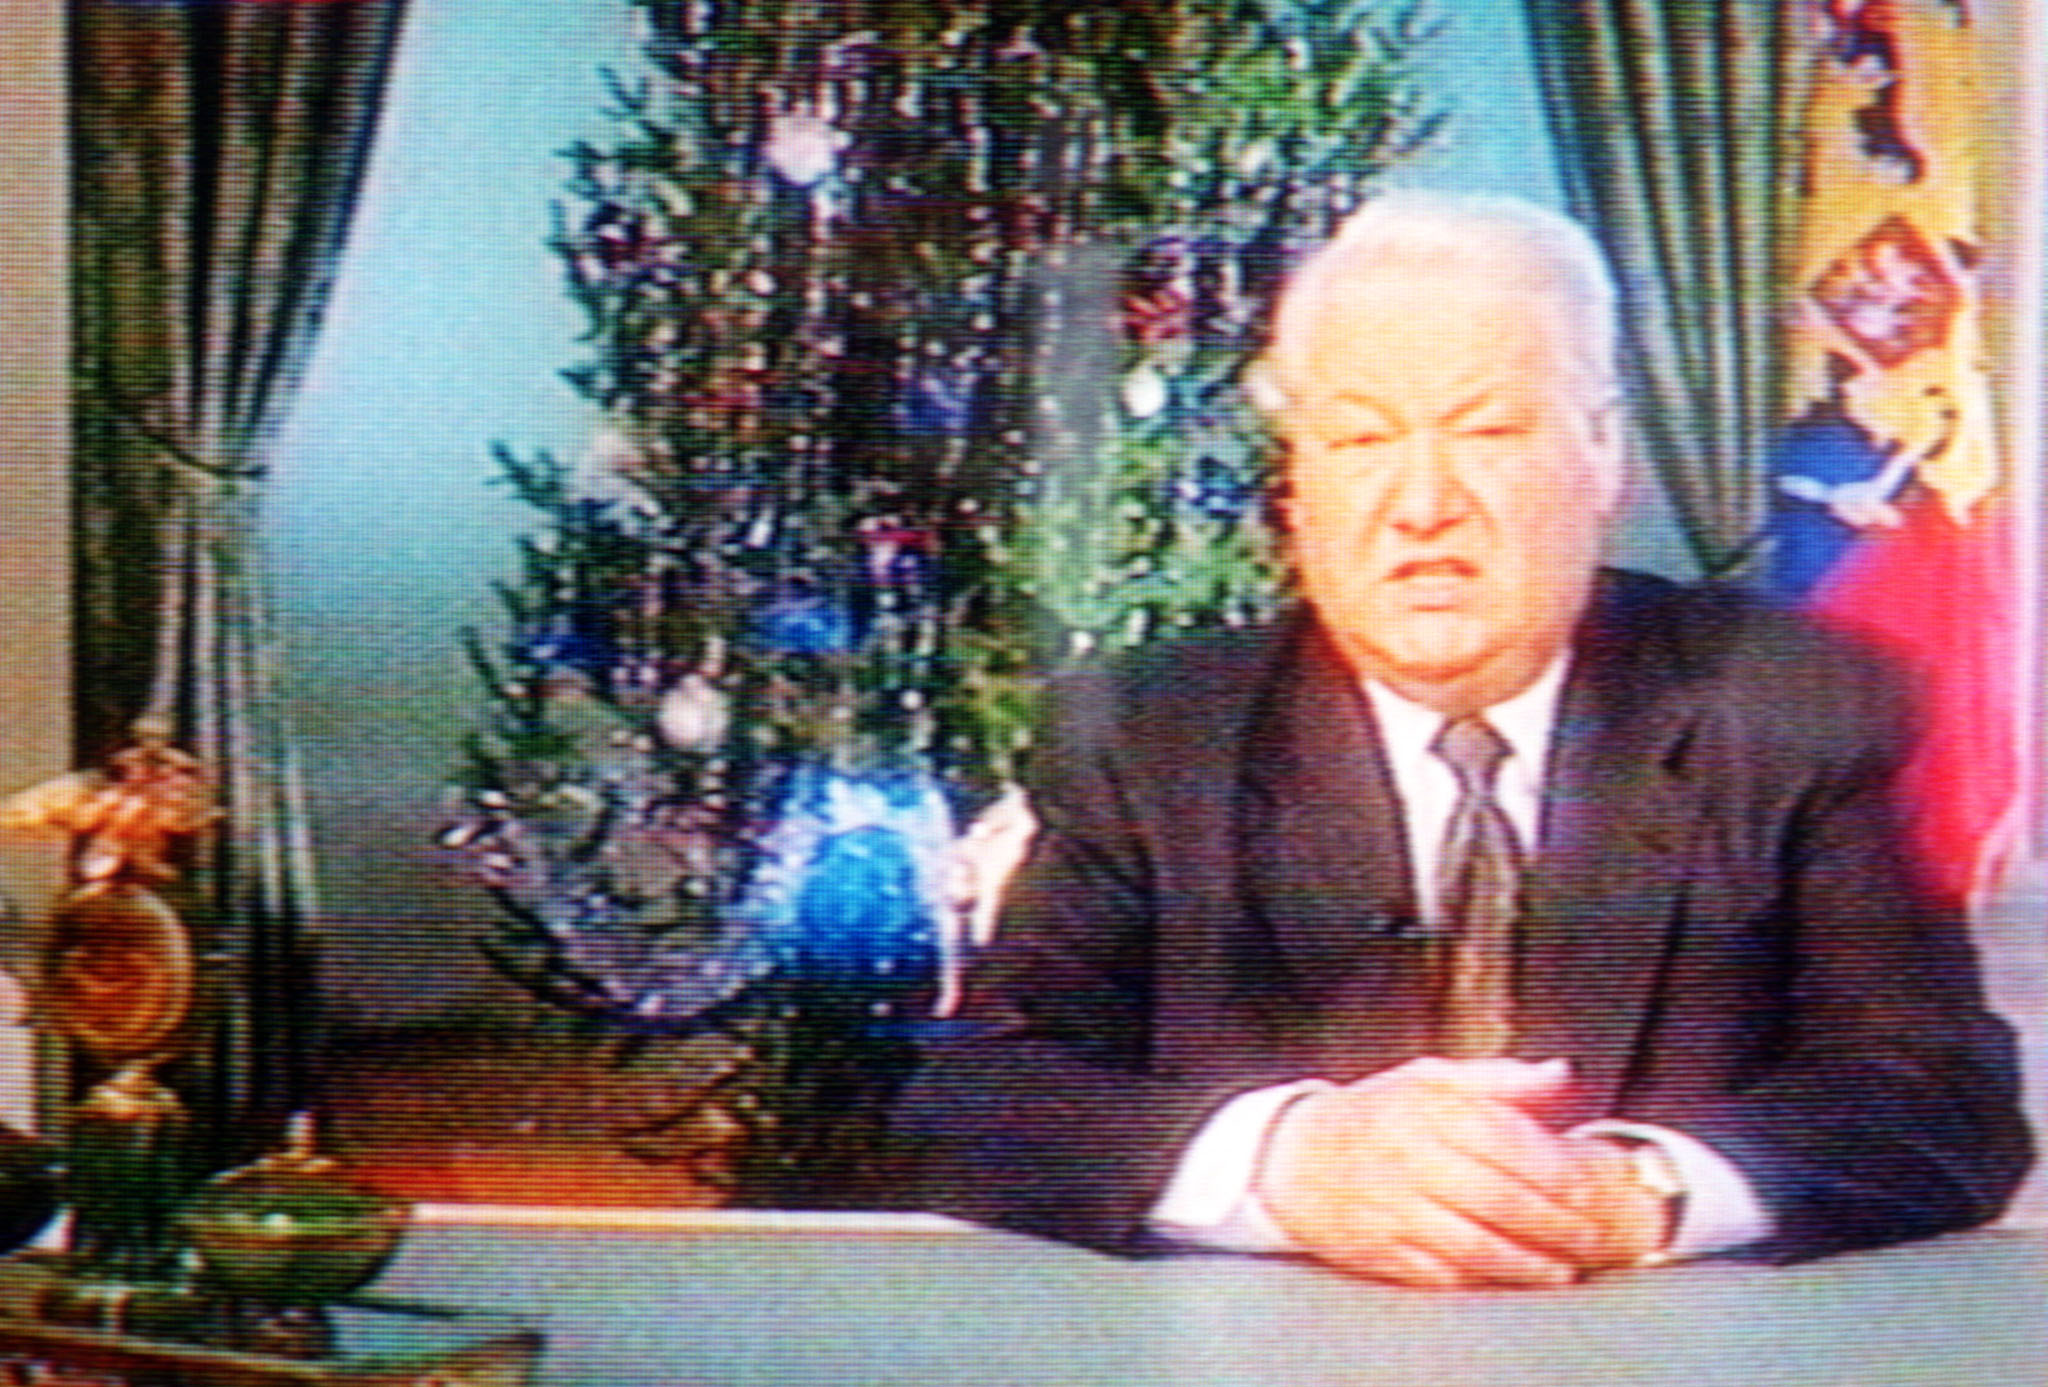 Ельцин говорит я устал. Новогоднее обращение Ельцина 1995.